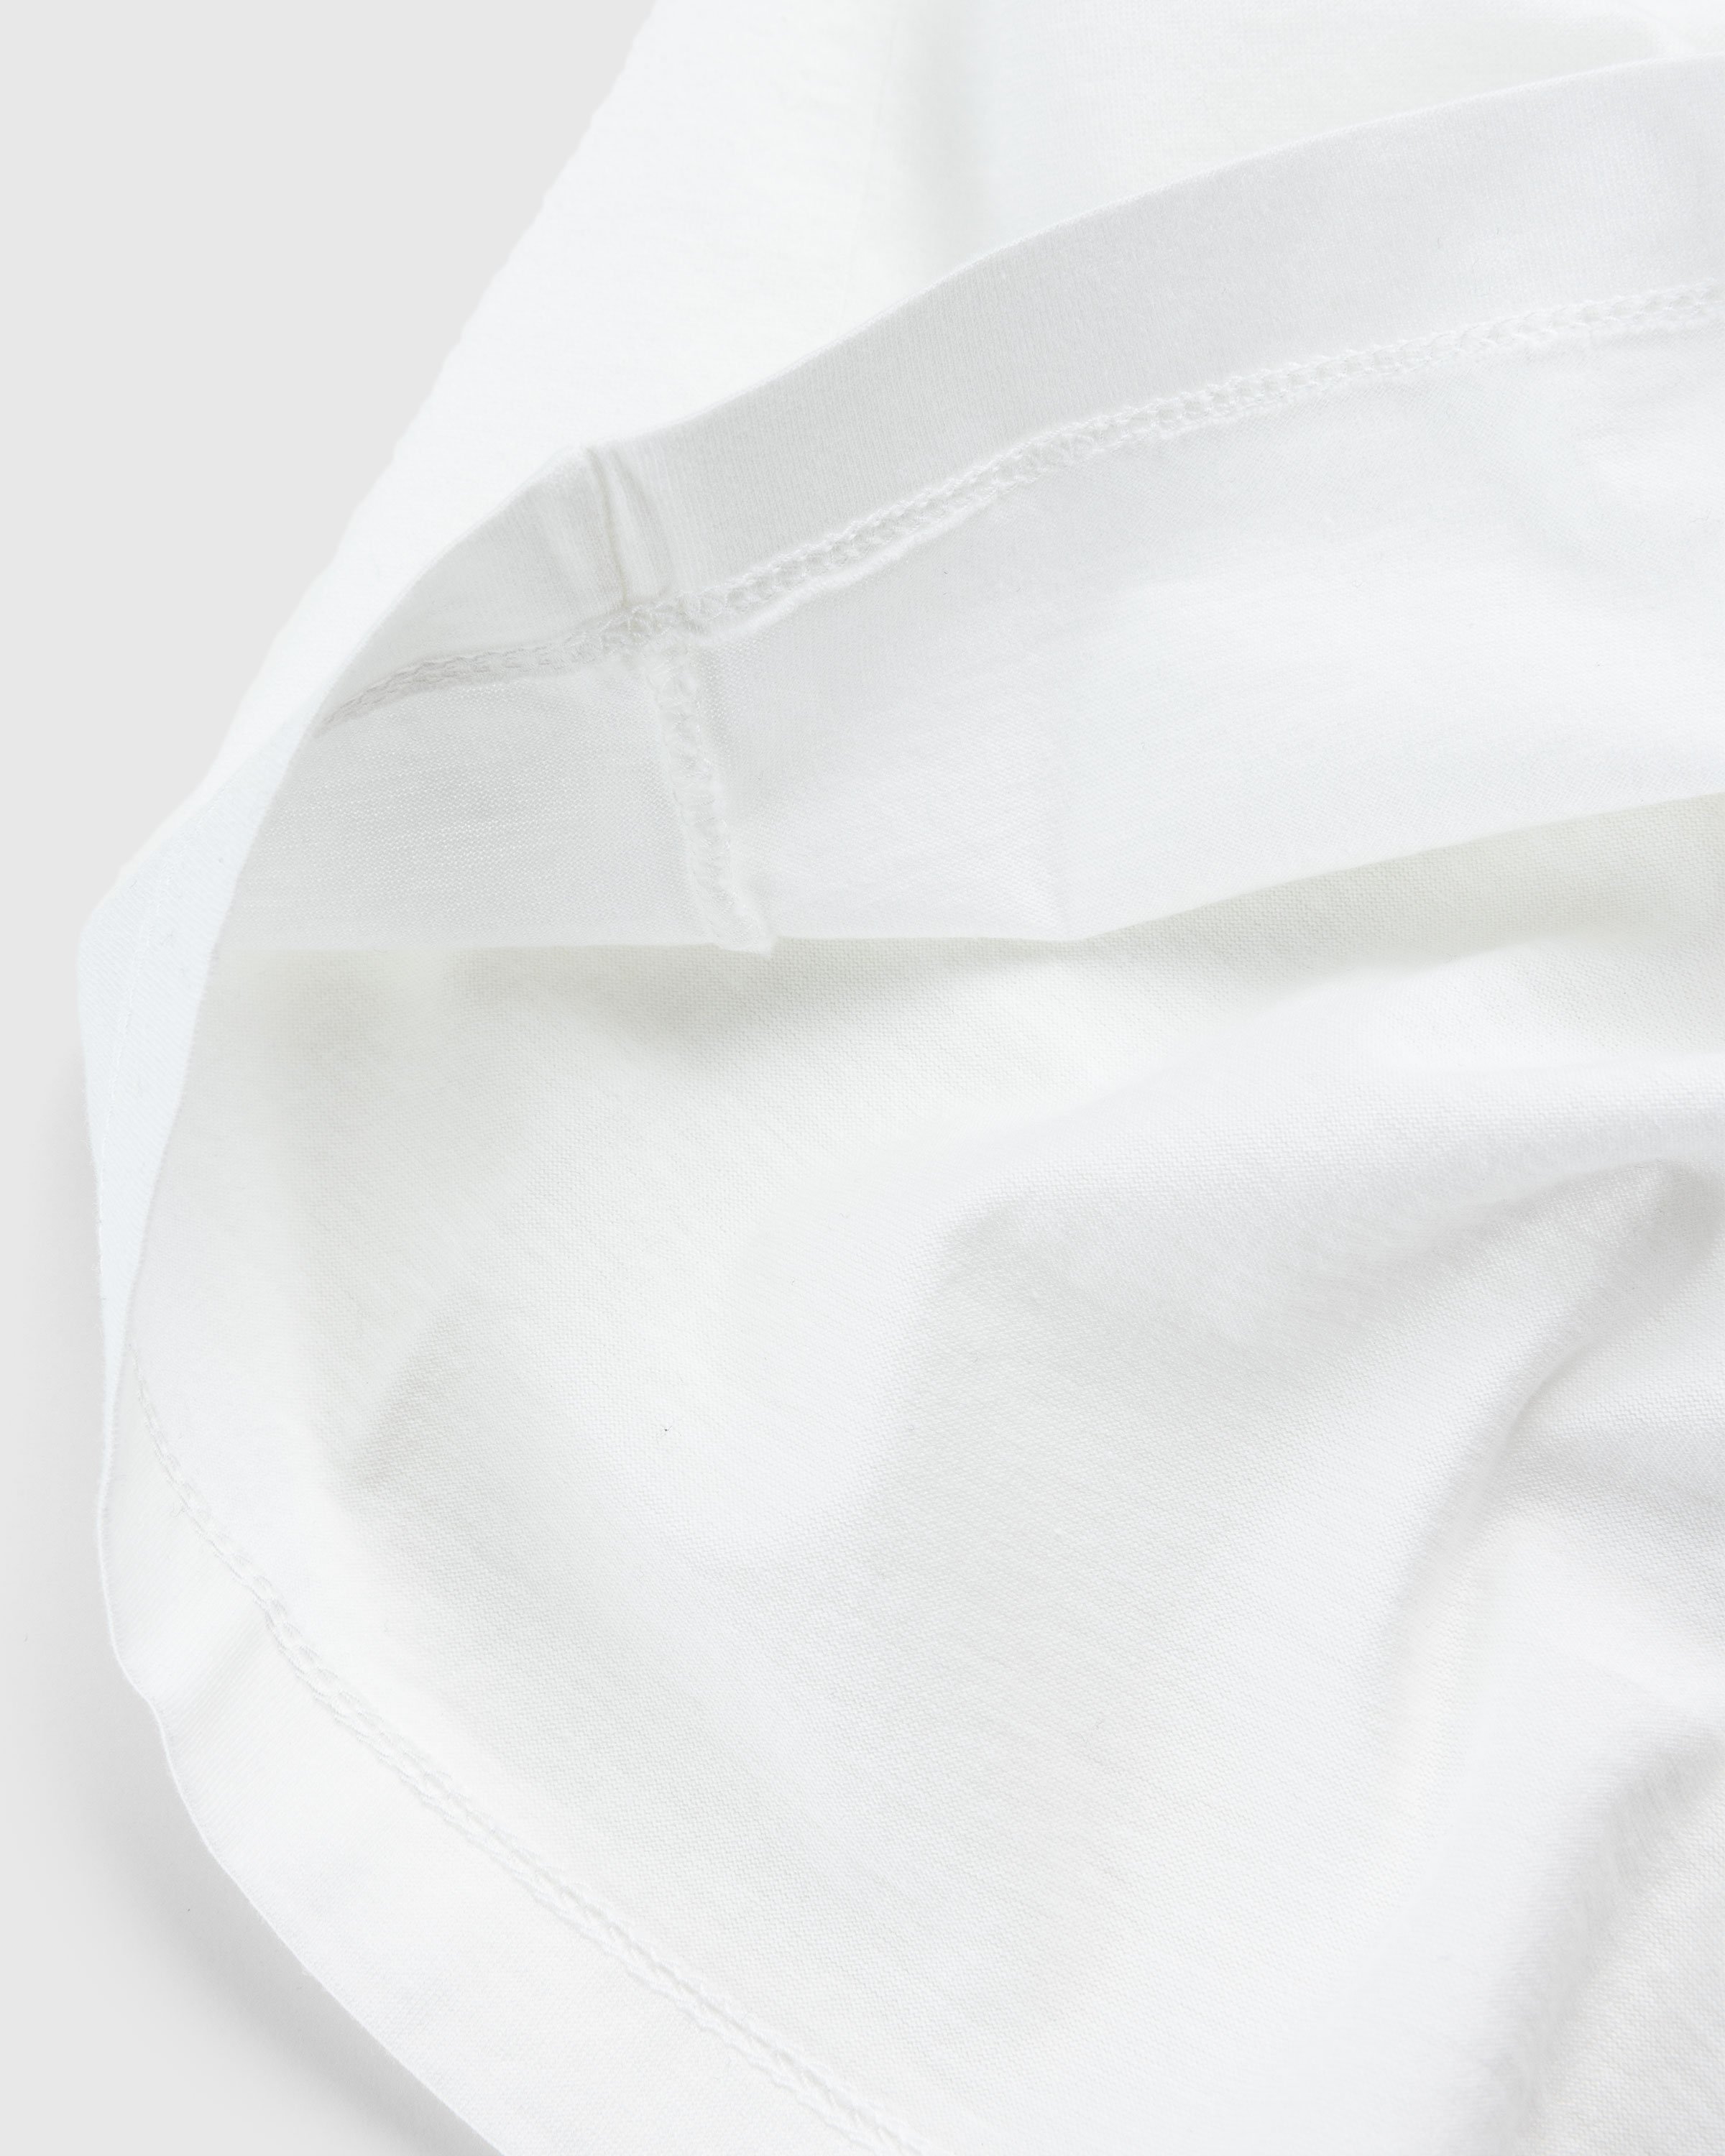 C.P. Company - T-SHIRTS - SHORT SLEEVE GAUZE WHITE - Clothing - White - Image 7